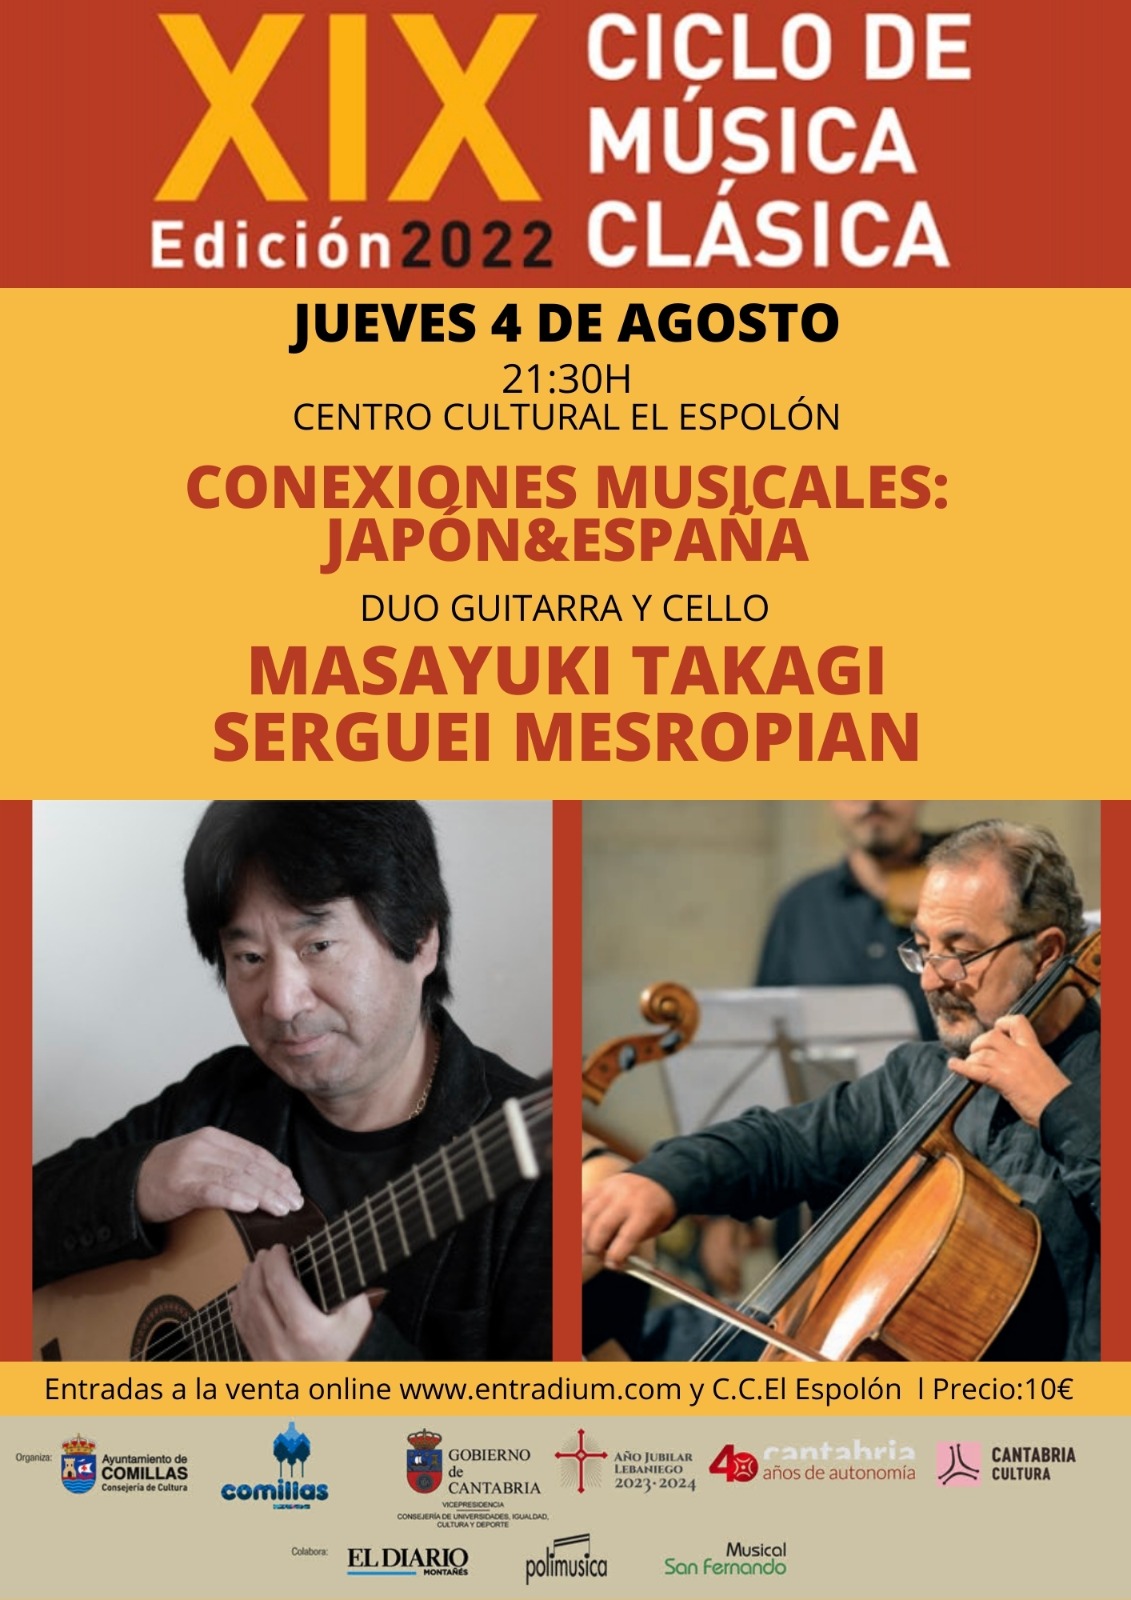 CAPRICHOS MUSICALES DE COMILLAS. Conexiones musicales: Japón&España